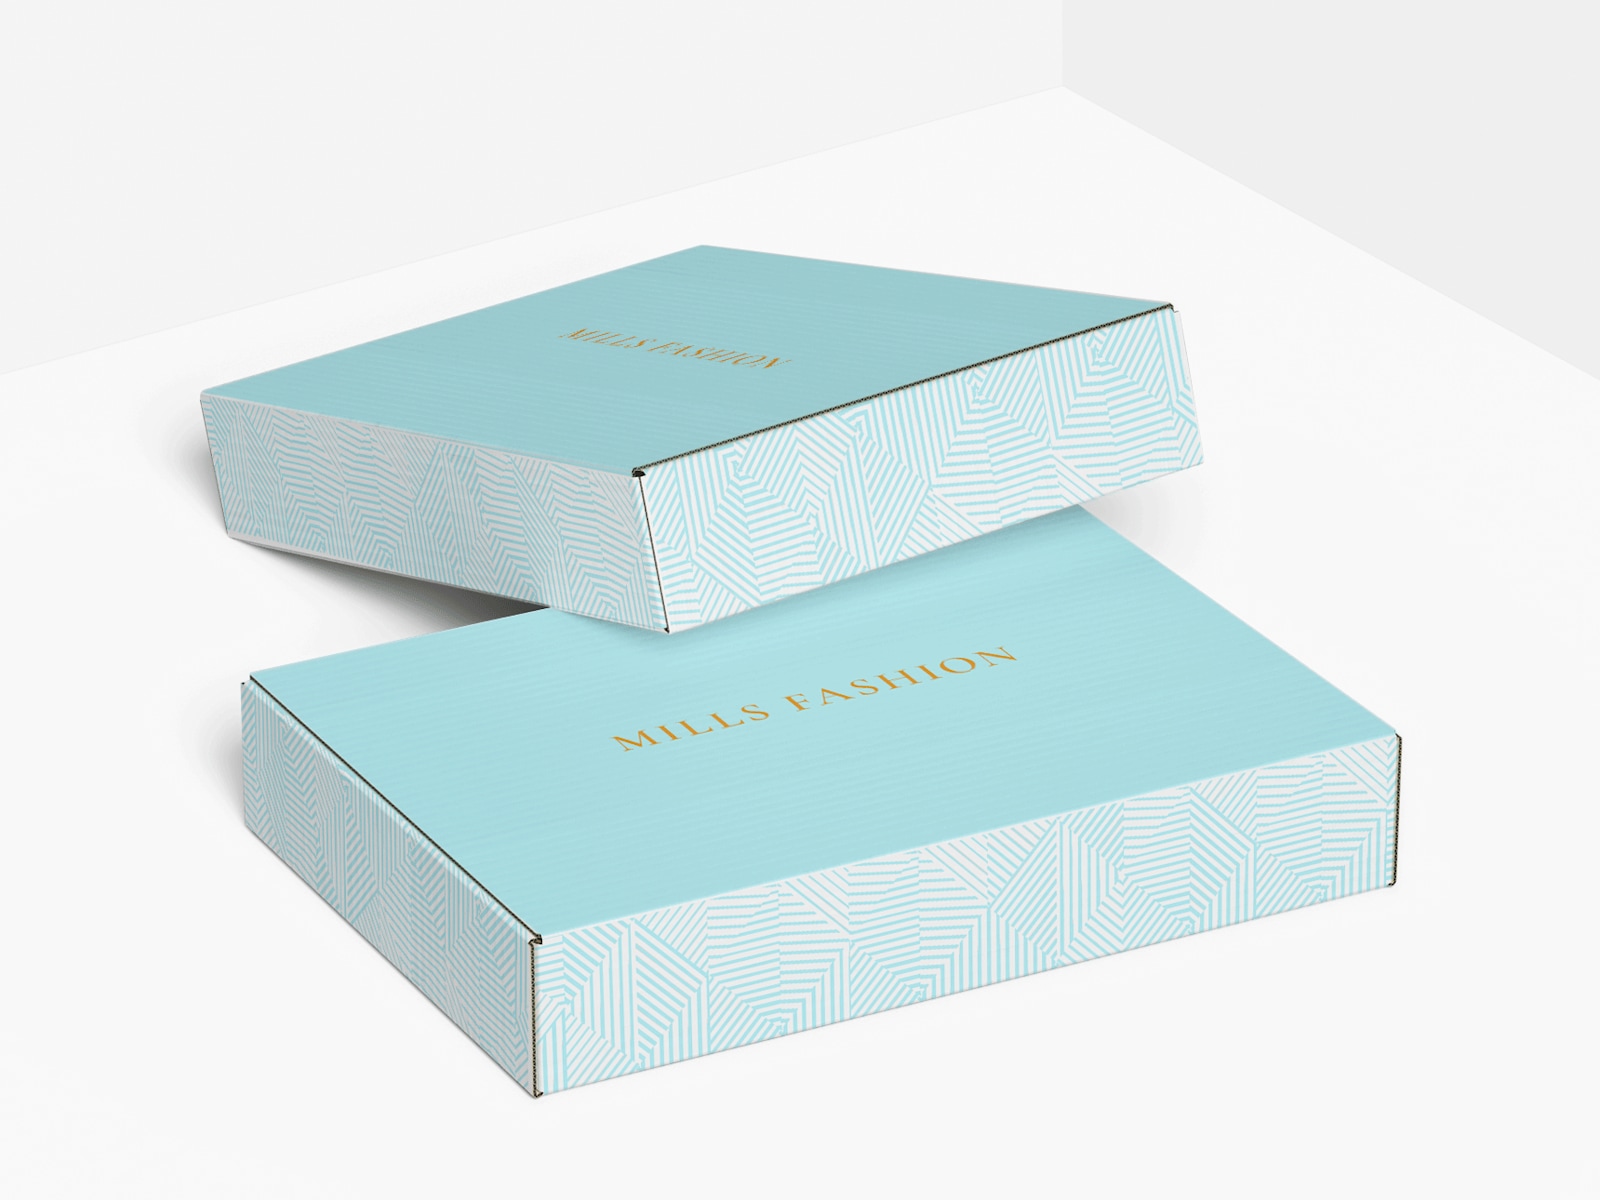 Cajas planas para envíos promocionando una empresa del sector de la moda.